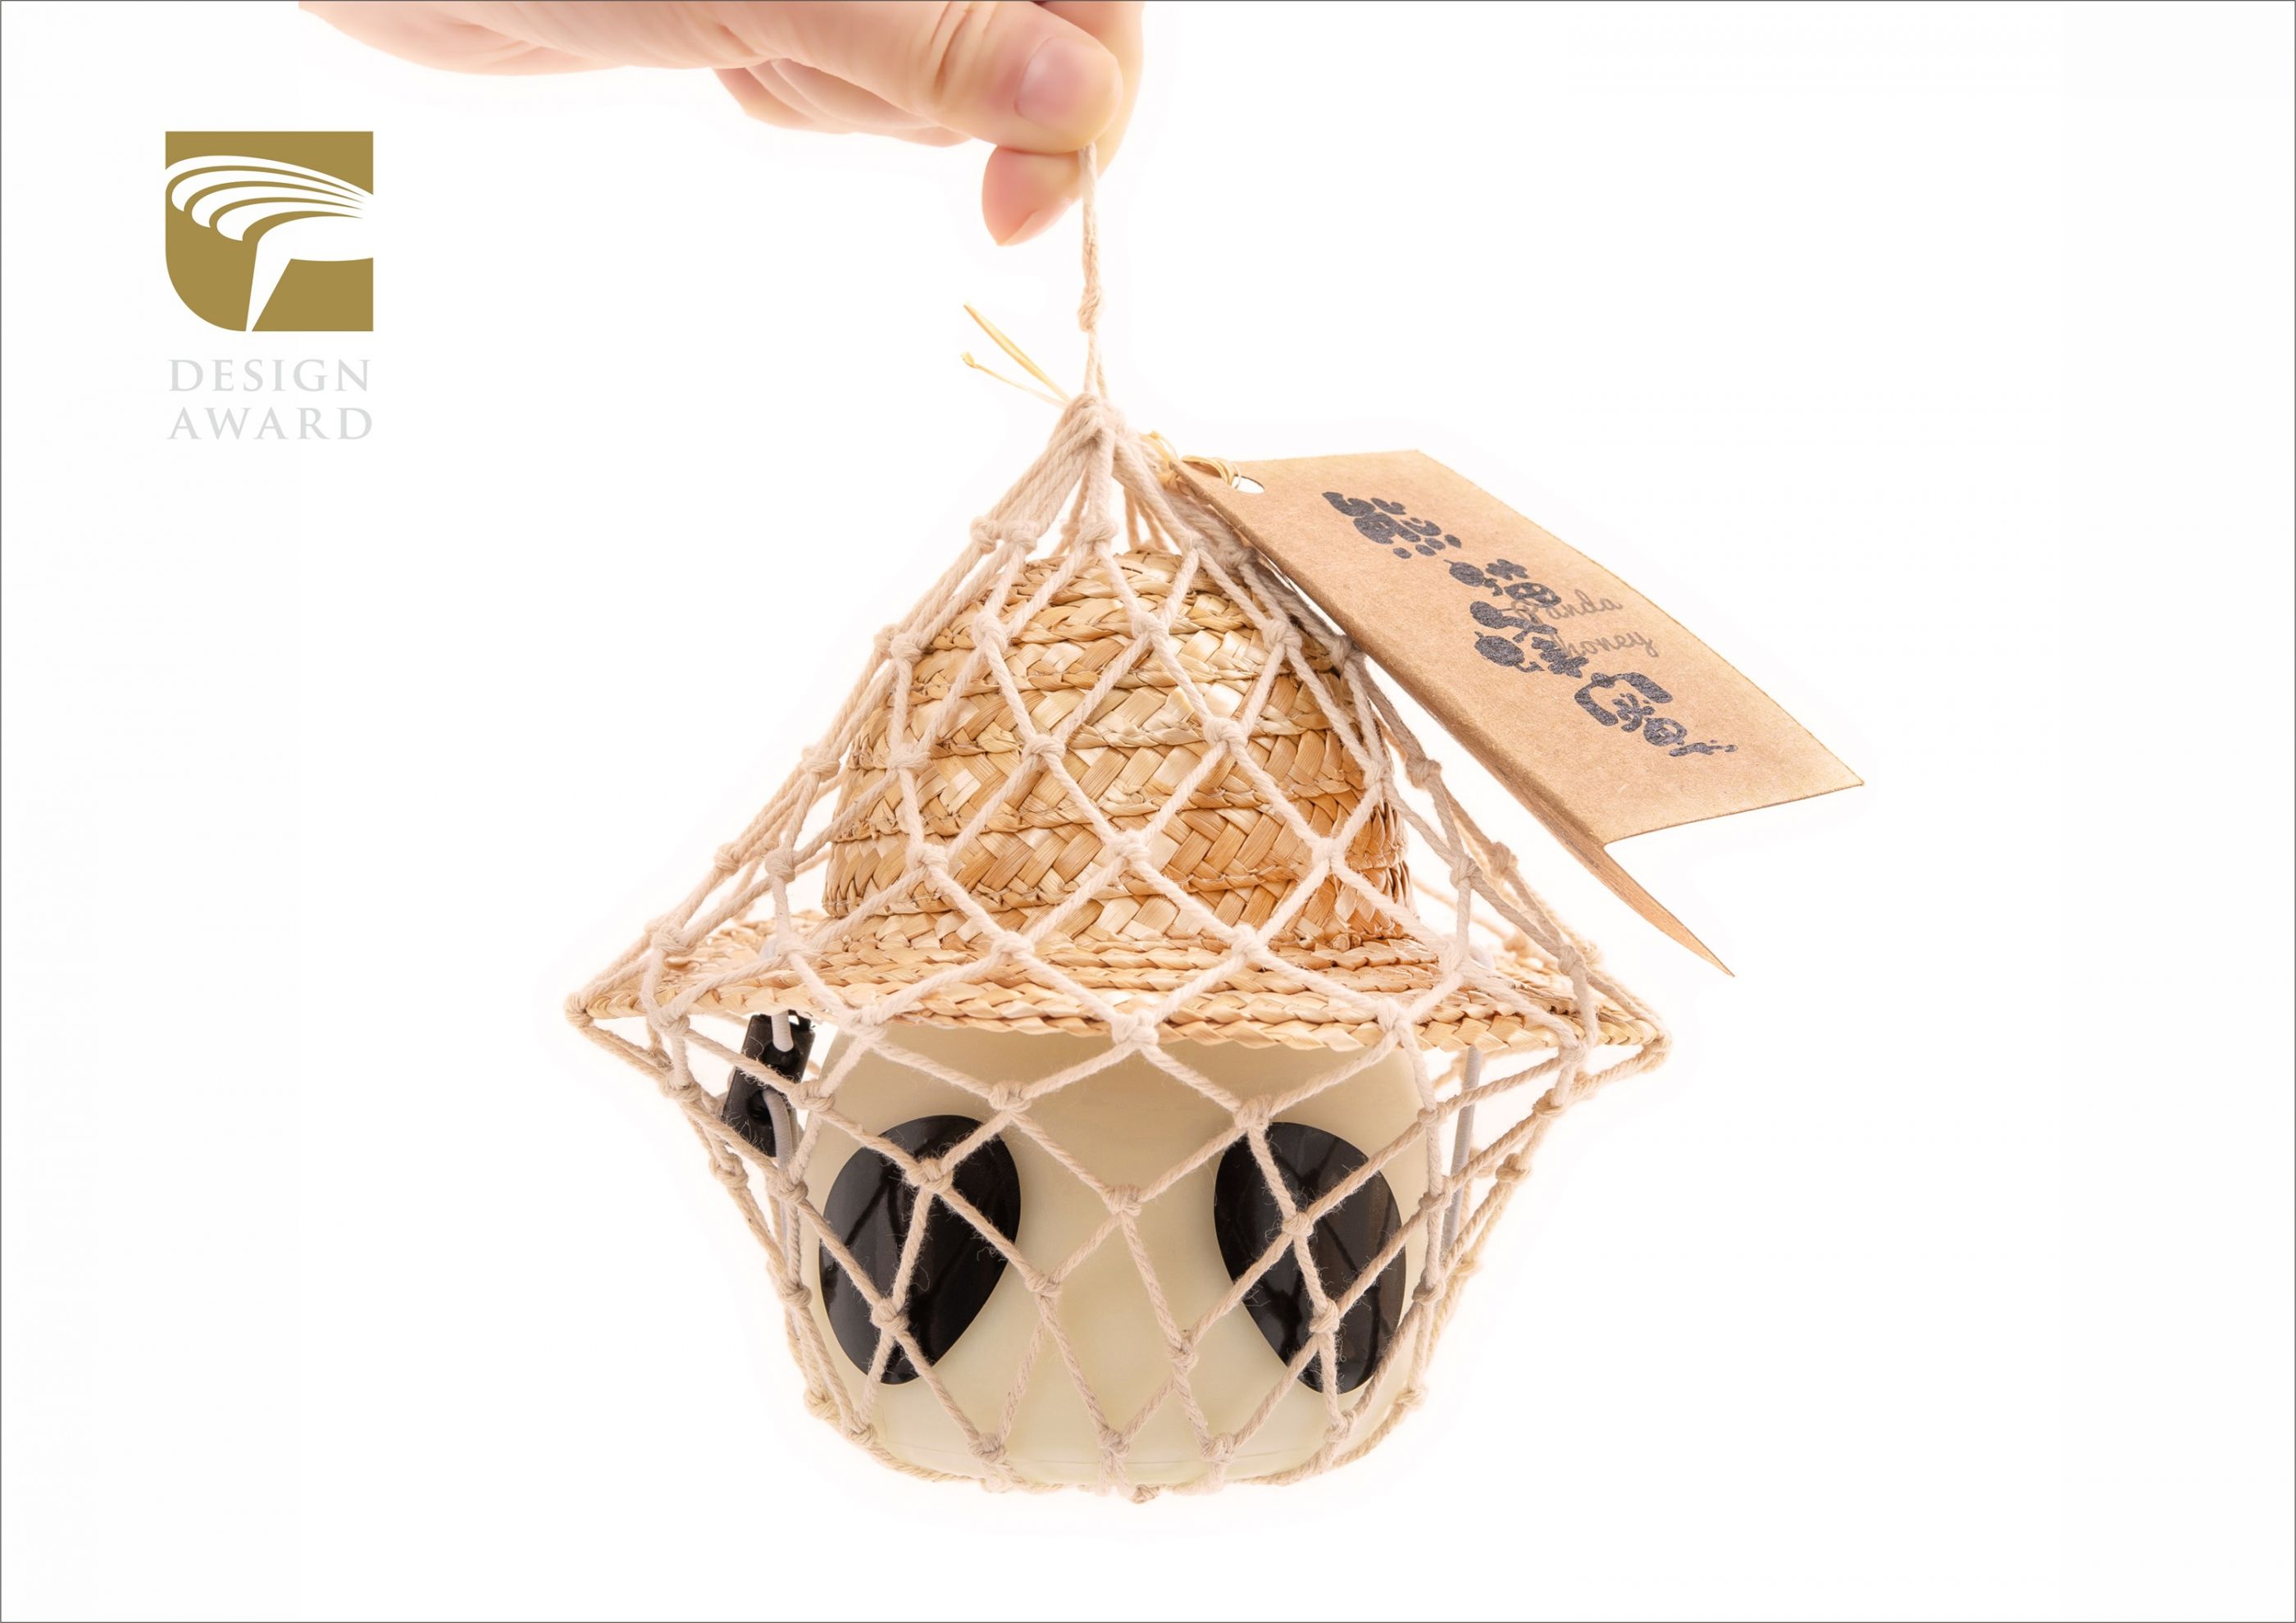 金点奖、金芦苇奖—熊猫蜂蜜包装设计 飞特网 会员原创食品包装设计